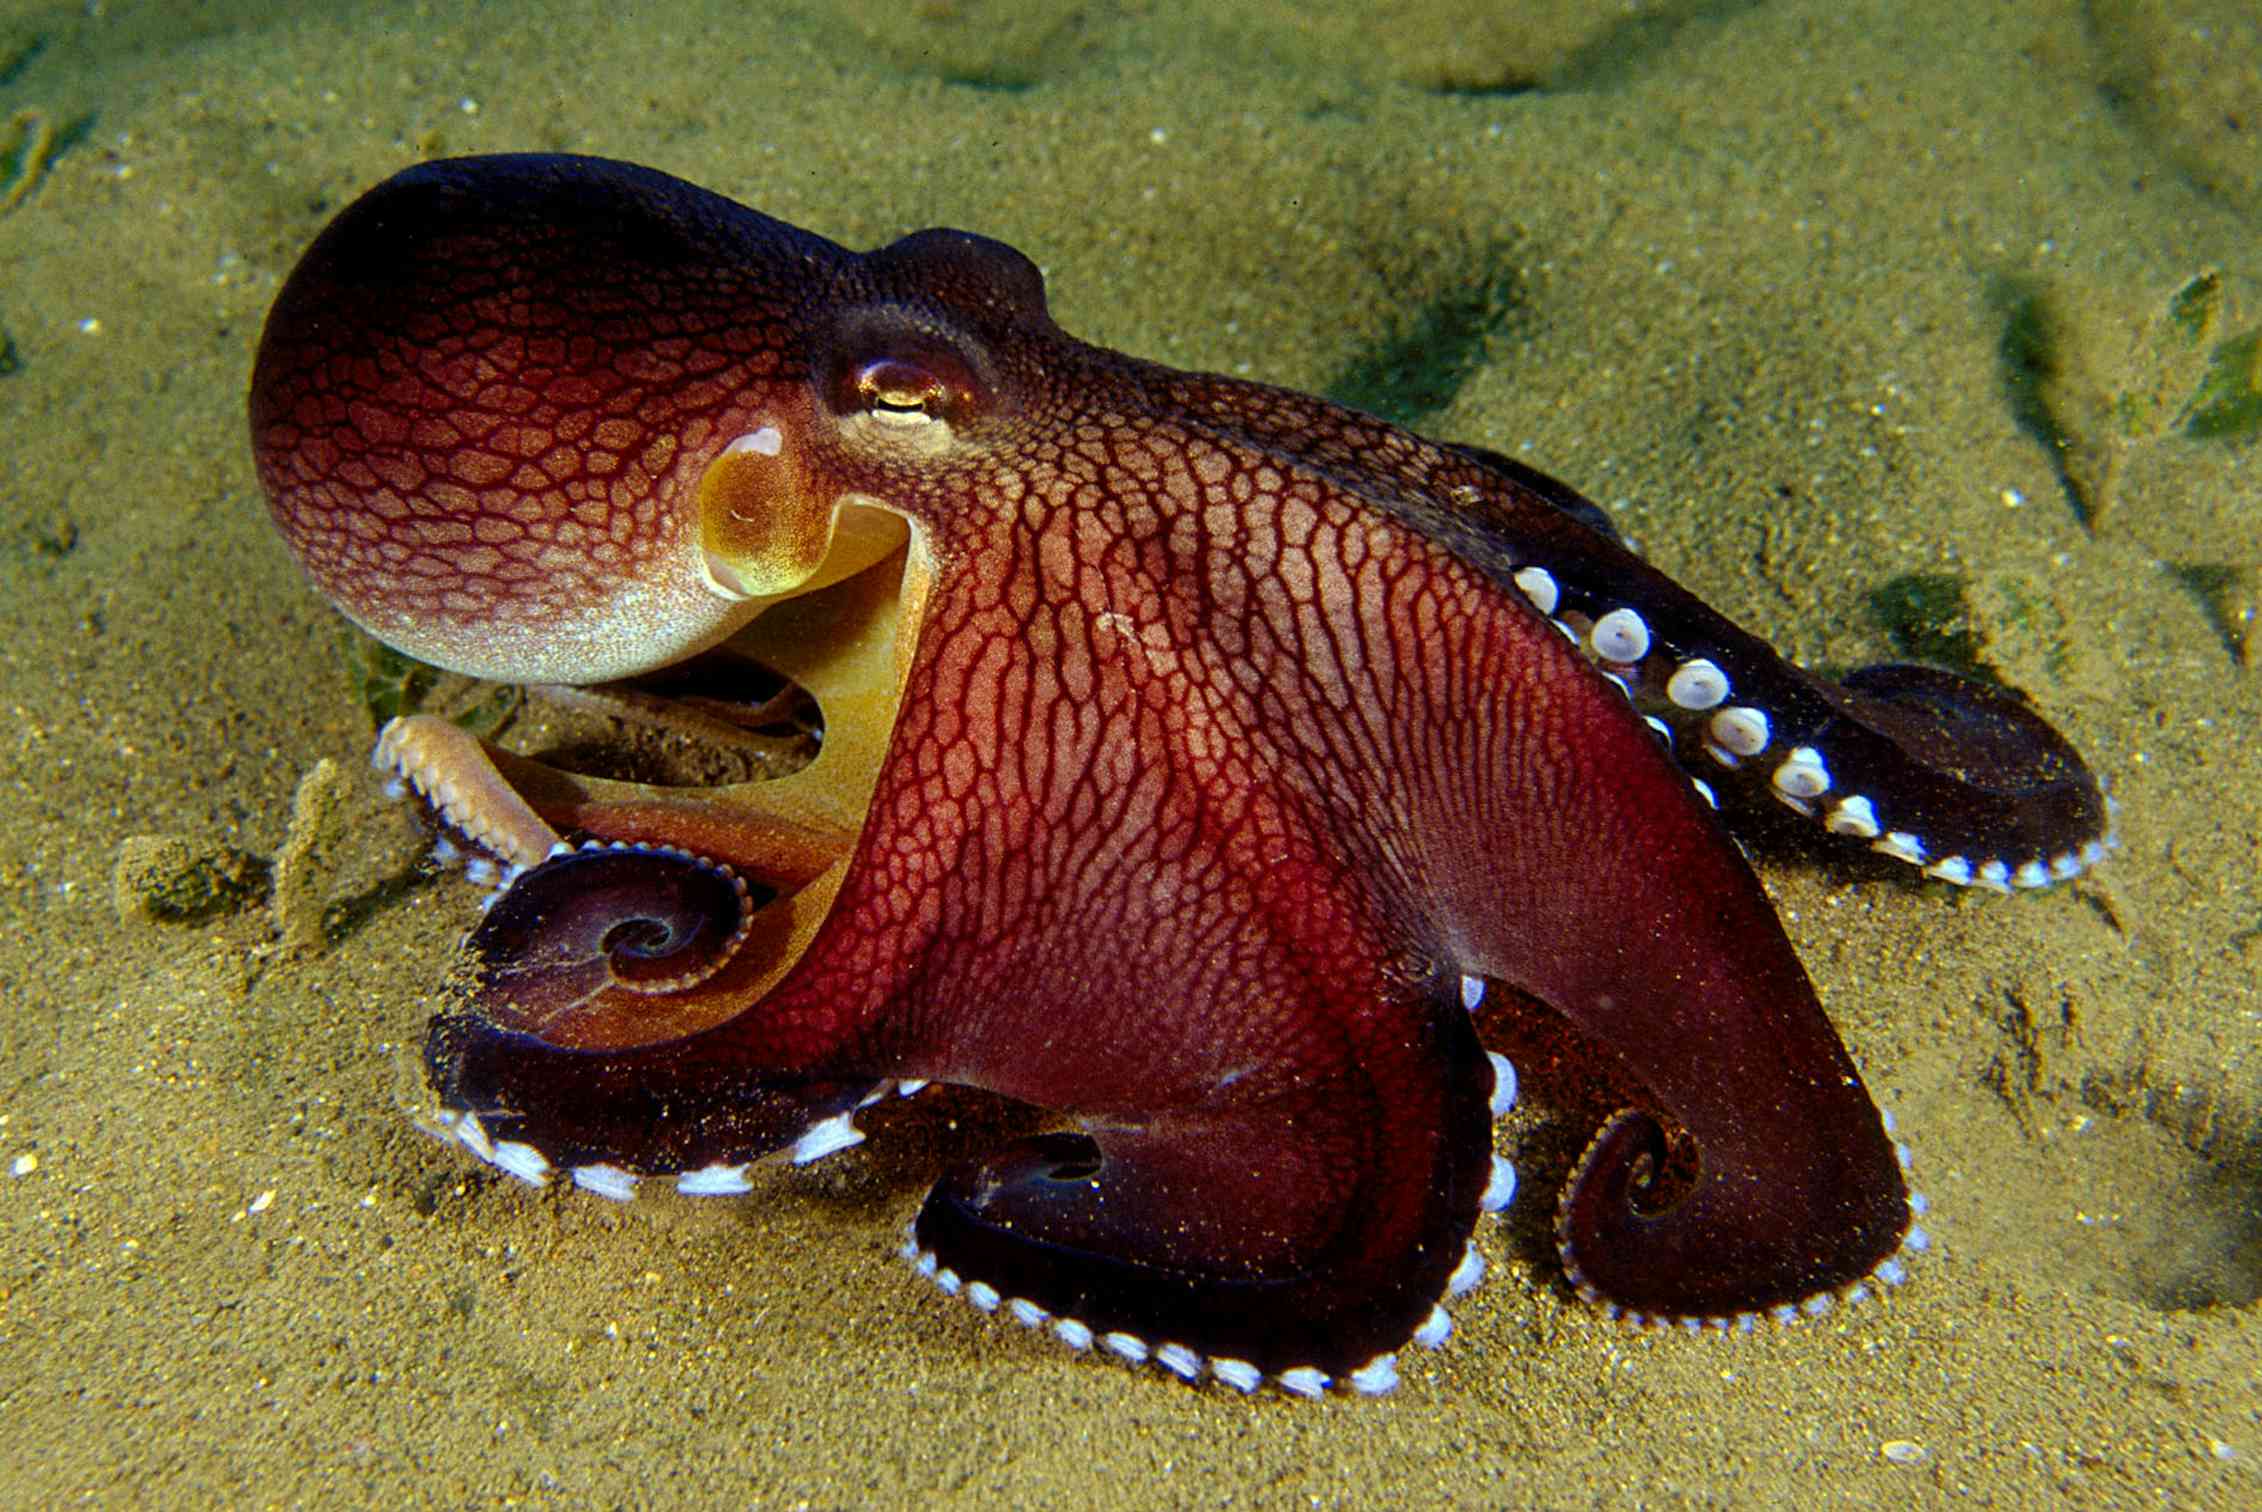 Сообщение удивительные обитатели океана. Amphioctopus marginatus. Спрут головоногий моллюск. Двужаберные головоногие. Синекольчатый осьминог.